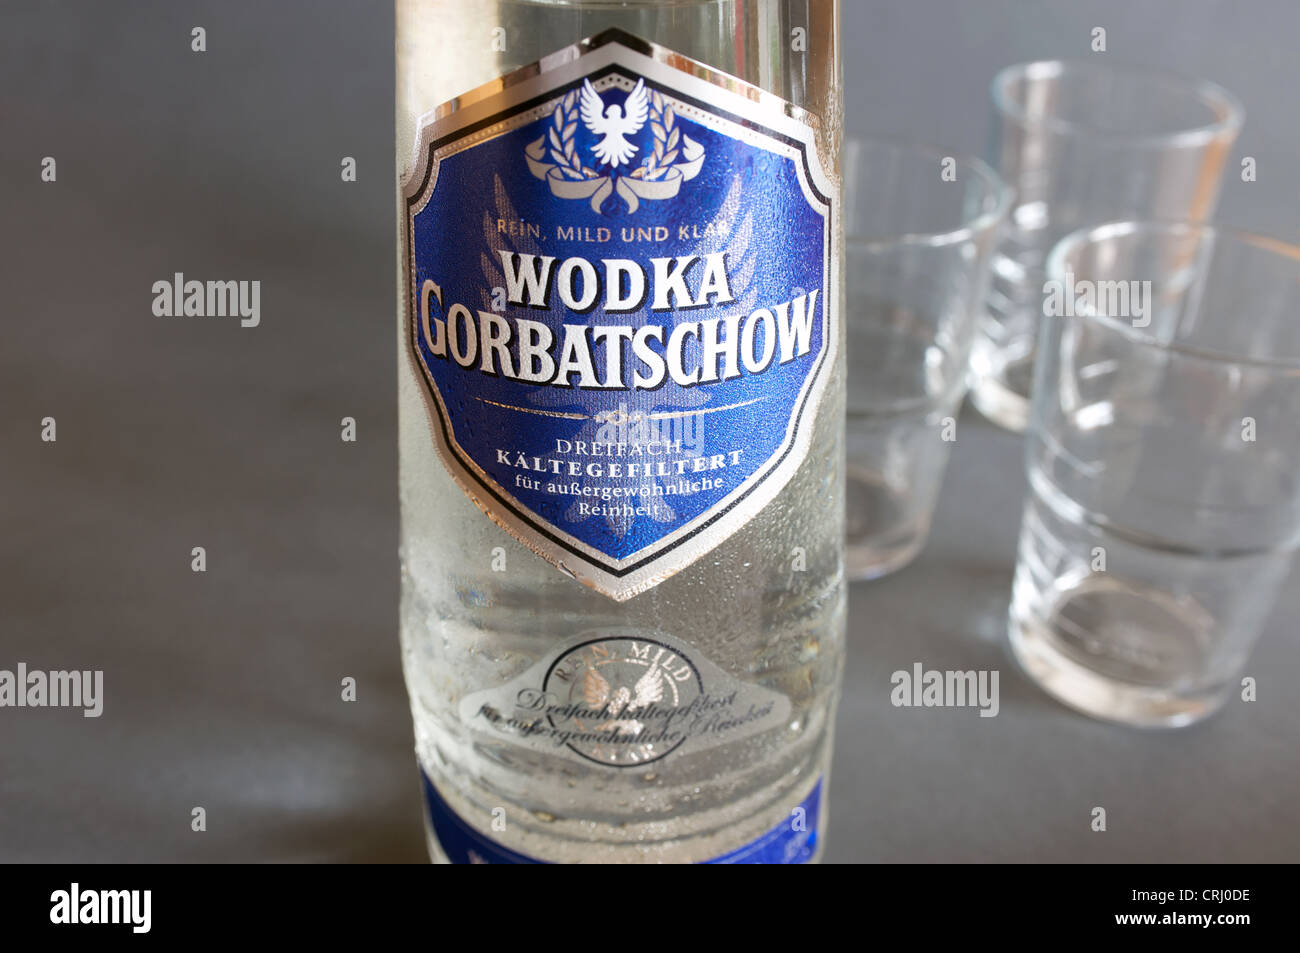 Gorbatschow wodka immagini e fotografie stock ad alta risoluzione - Alamy